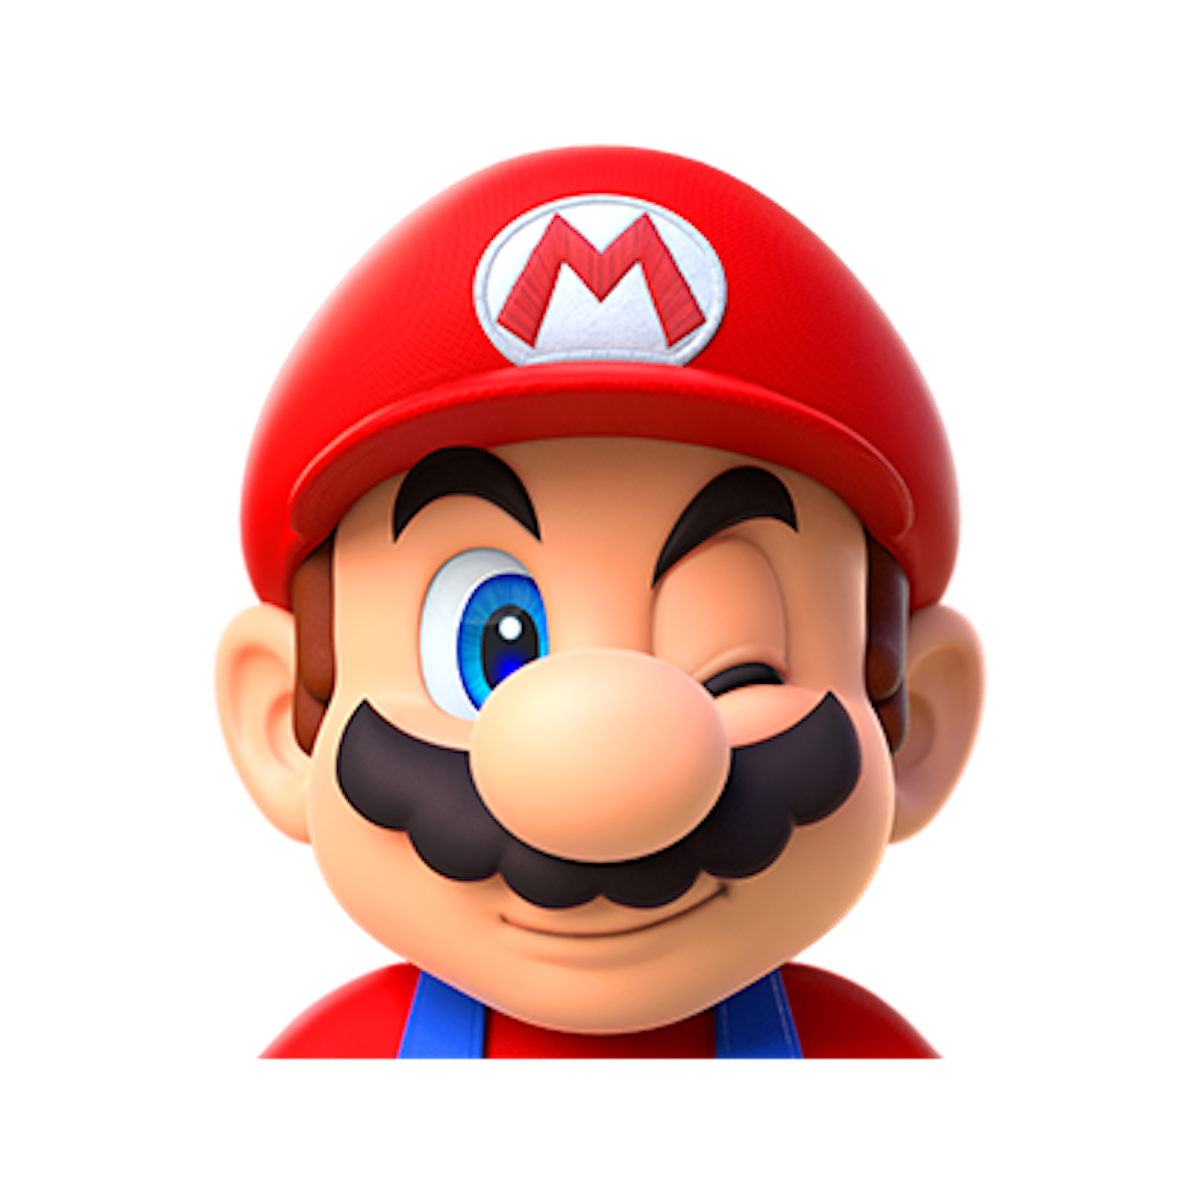 Mario brothers. Марио персонажи. Марио Нинтендо. Марио (персонаж игр). Марио лицо.